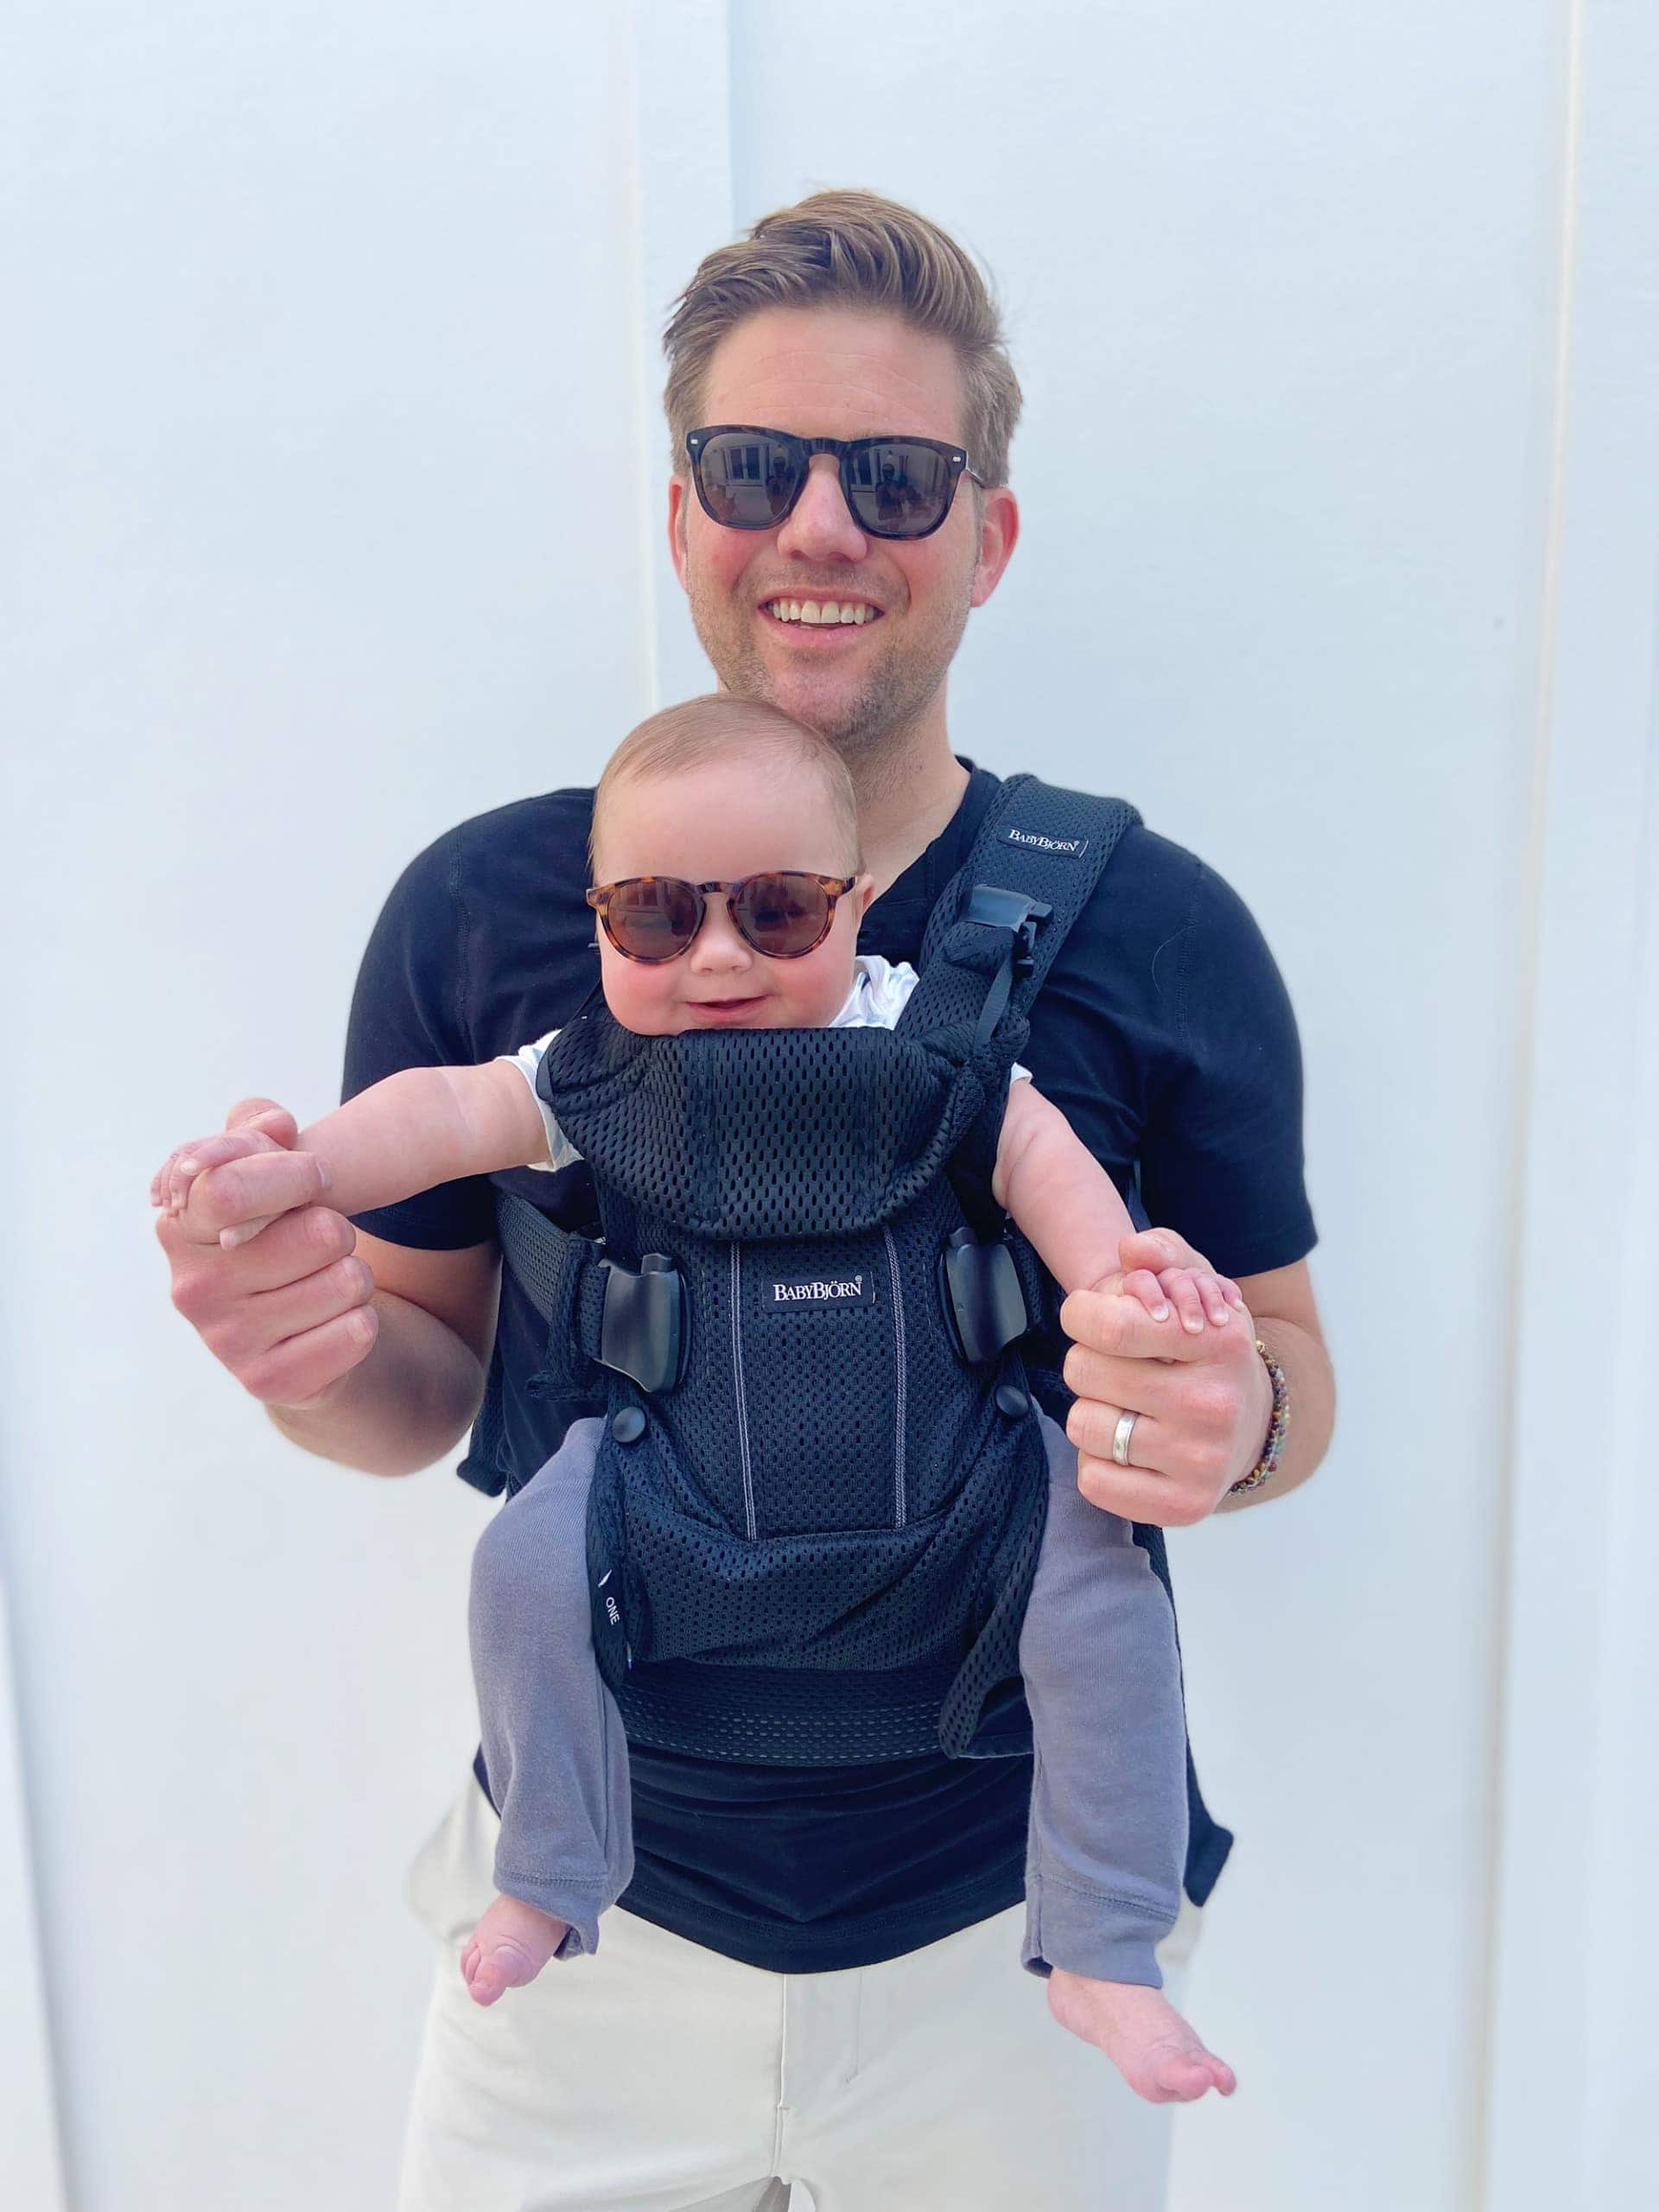 Wearing Ellis in a baby carrier